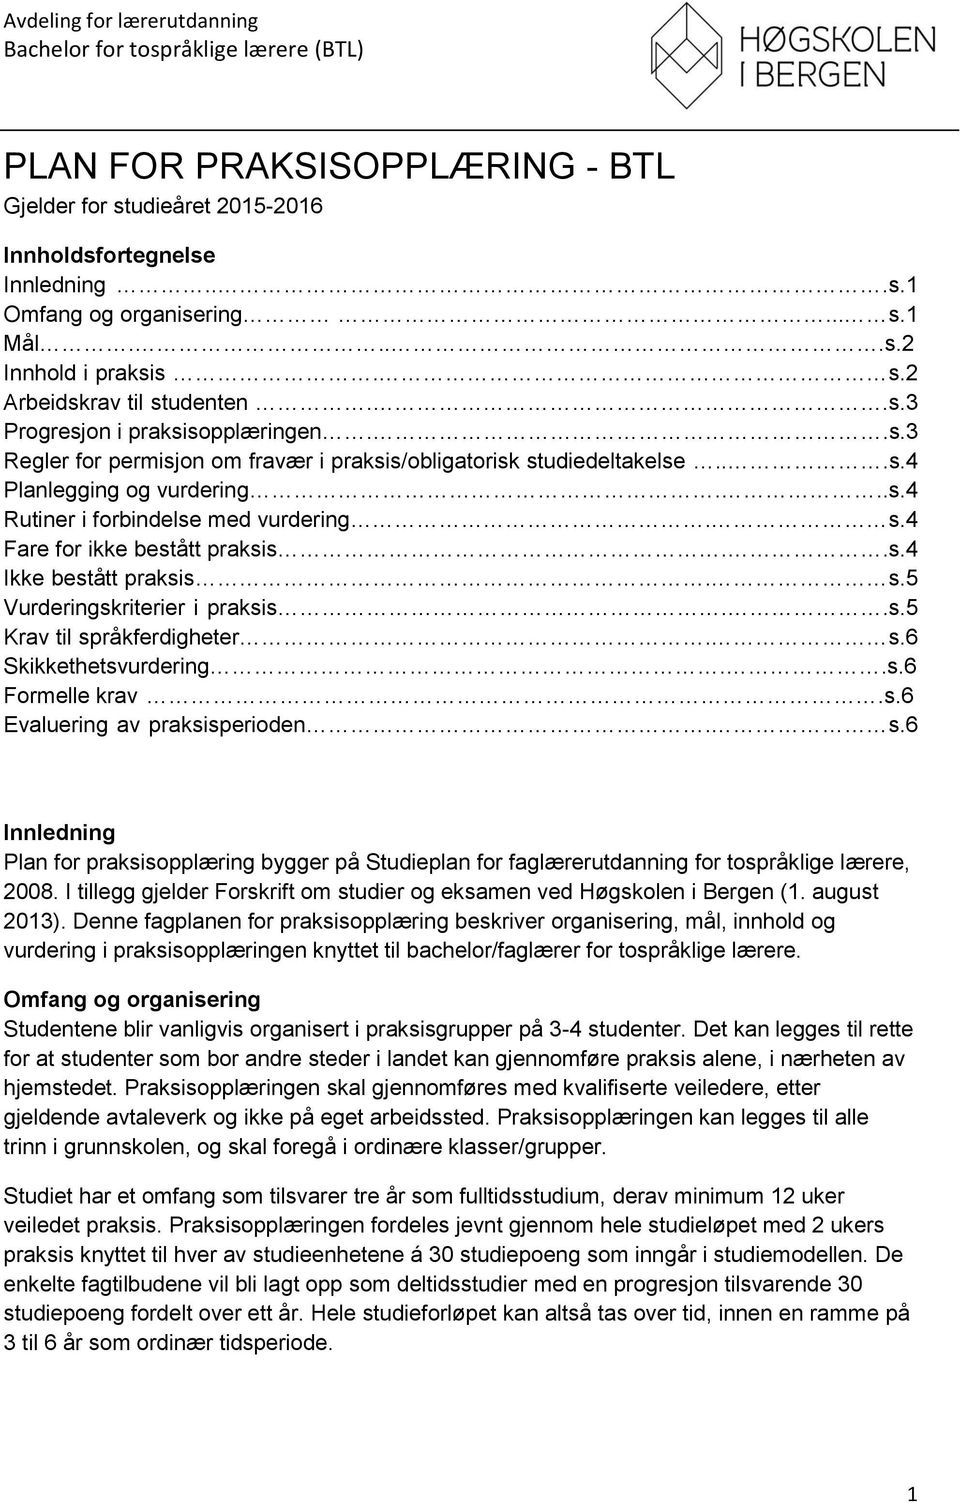 s.5 Vurderingskriterier i praksis..s.5 Krav til språkferdigheter. s.6 Skikkethetsvurdering..s.6 Formelle krav.s.6 Evaluering av praksisperioden. s.6 Innledning Plan for praksisopplæring bygger på Studieplan for faglærerutdanning for tospråklige lærere, 2008.